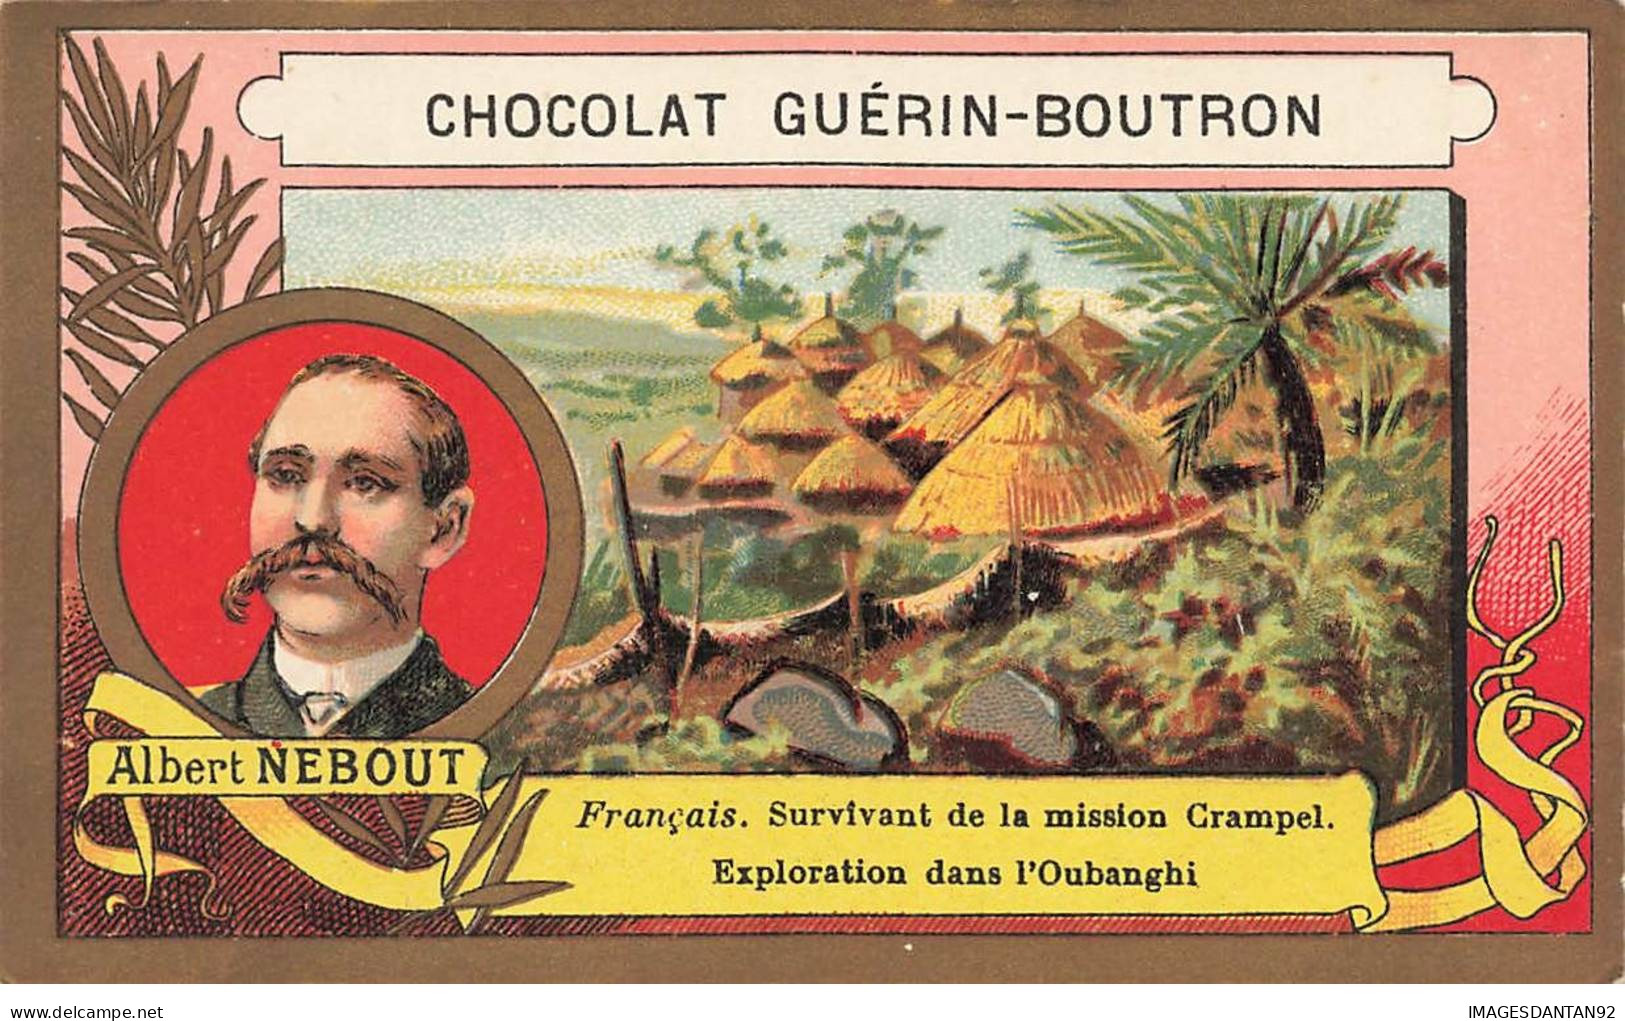 CHROMO #CL40292 CHOCOLAT GUERIN BOUTRON ALBERT NEBOUT EXPLORATION OUBANGHI AFRIQUE COLONIALE HEROLD PARIS - Guerin Boutron